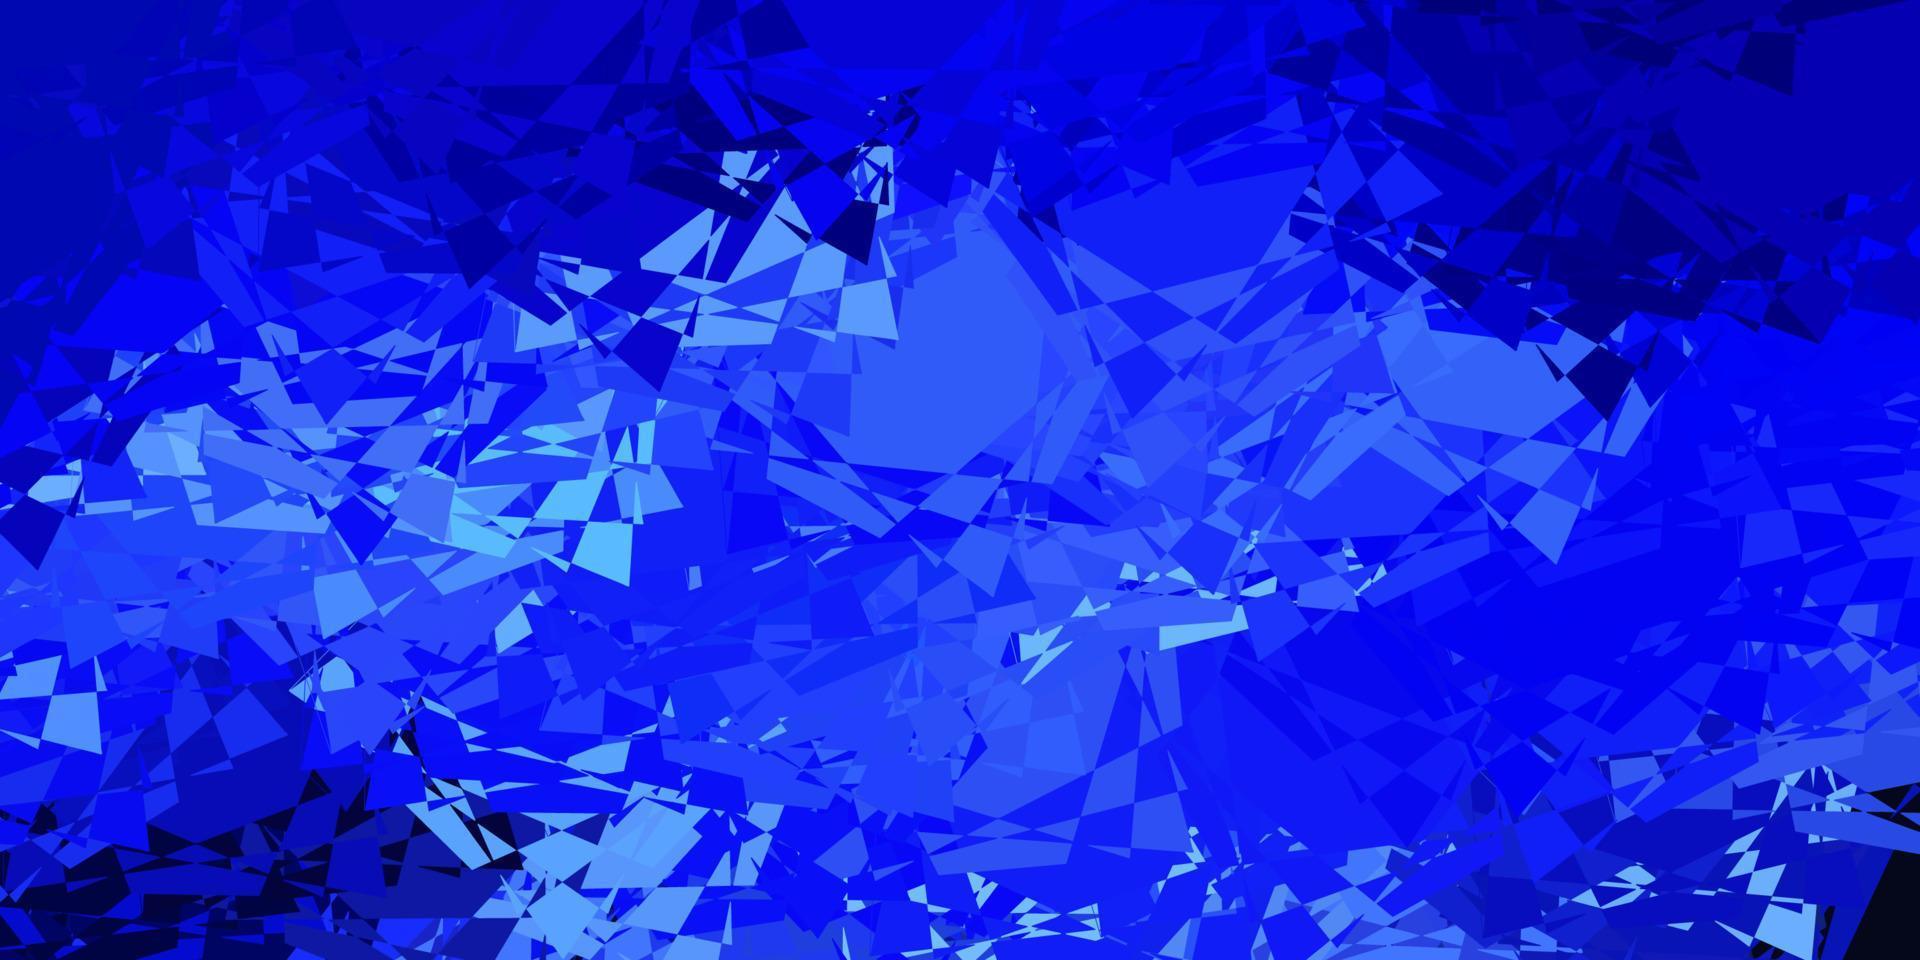 Telón de fondo de vector azul oscuro con triángulos, líneas.